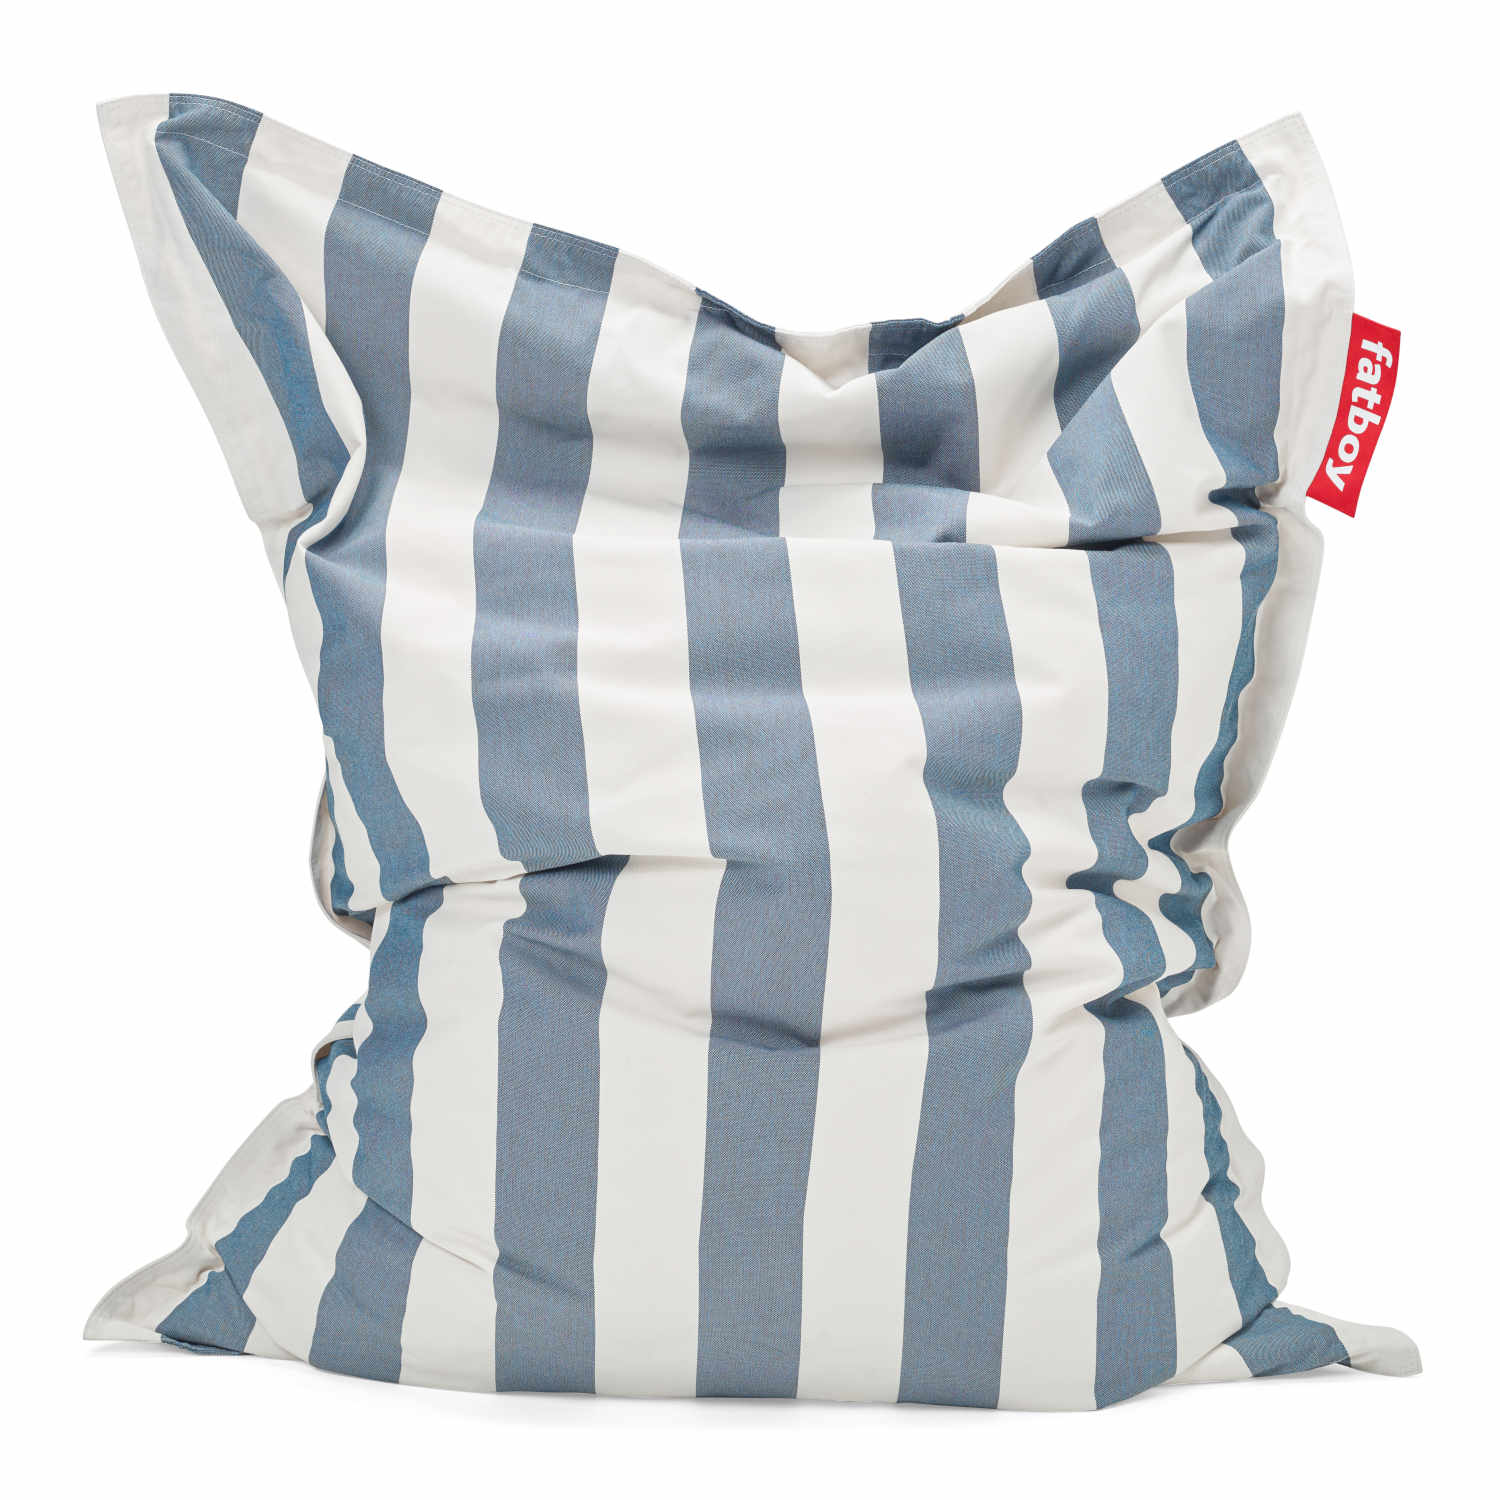 Original Outdoor Sitzsack, Farbe stripe ocean blue von Fatboy